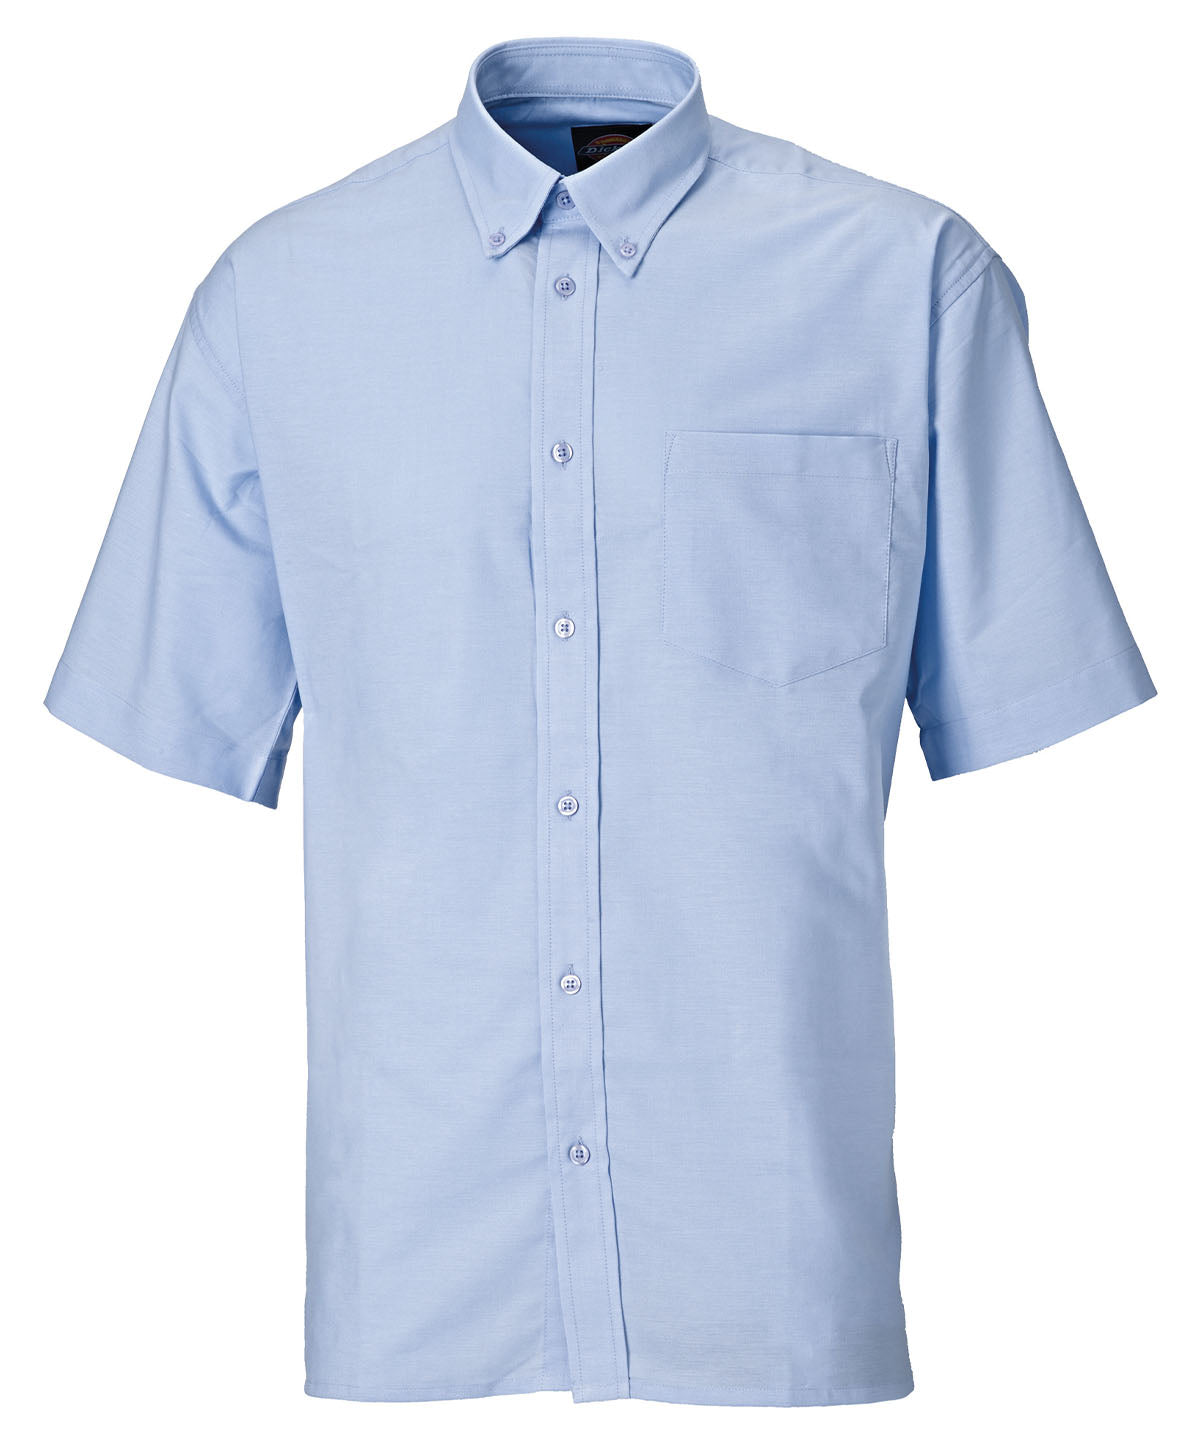 Bolir - Oxford Weave Short Sleeve Shirt (SH64250)